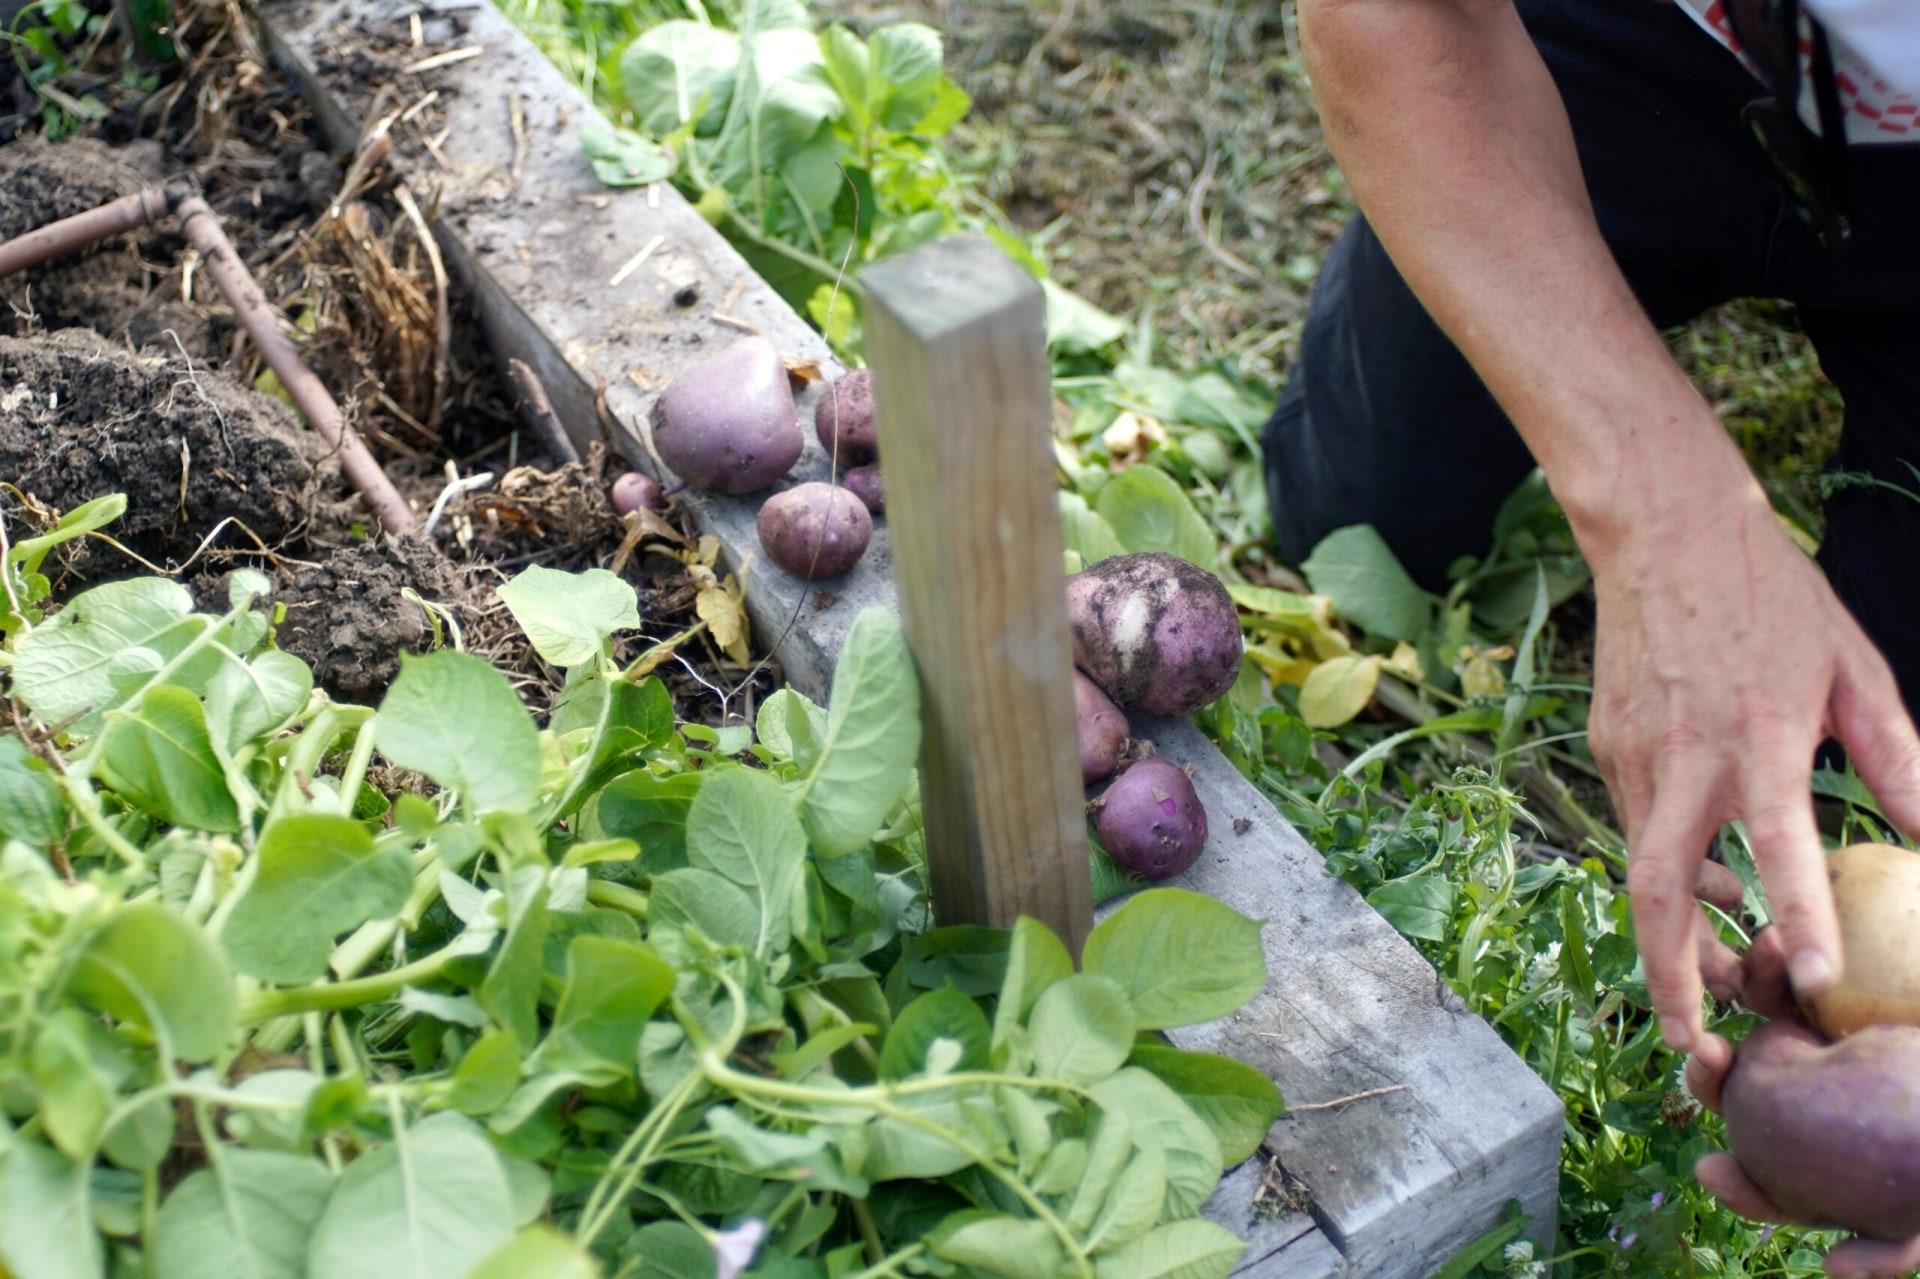 Freshly picked purple potatoes in a garden.